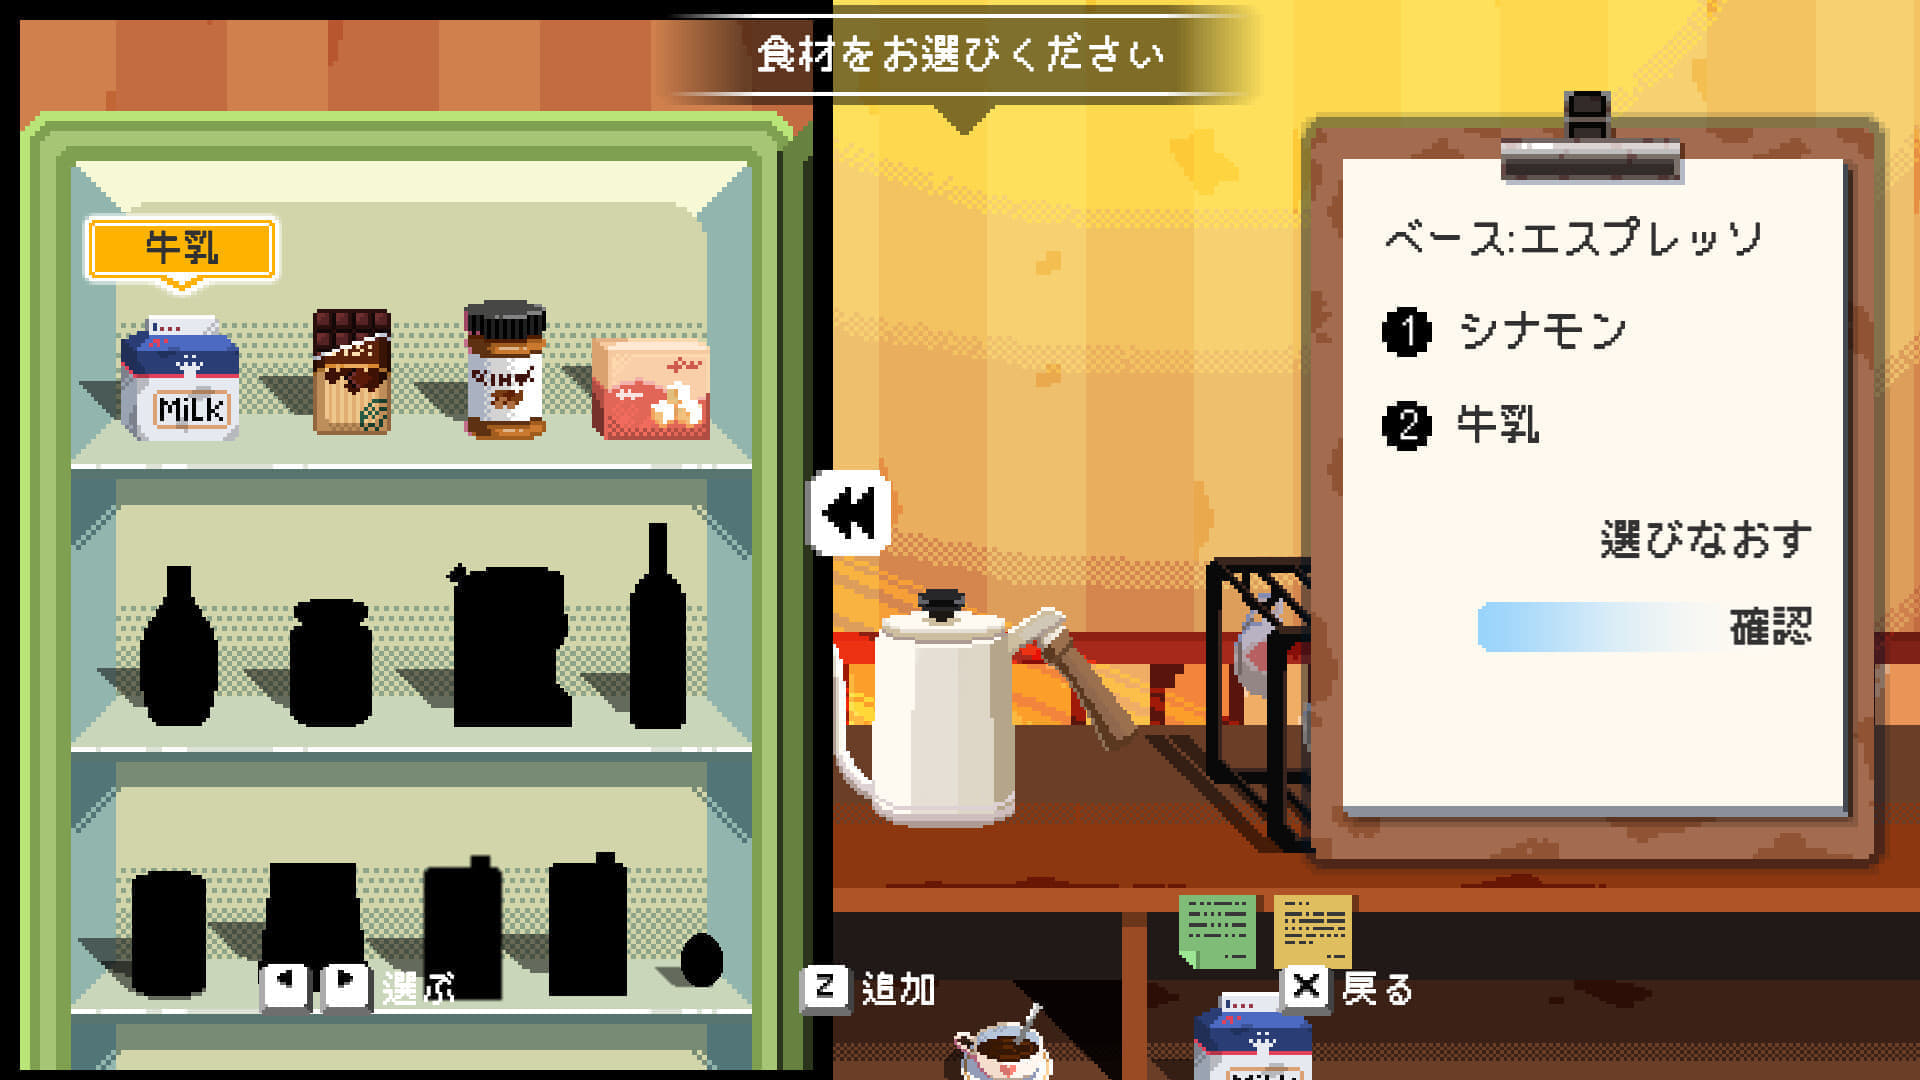 『電気街の喫茶店』が2024年夏ごろに発売決定。日本橋でメイド喫茶を経営するシミュレーションゲーム
_002